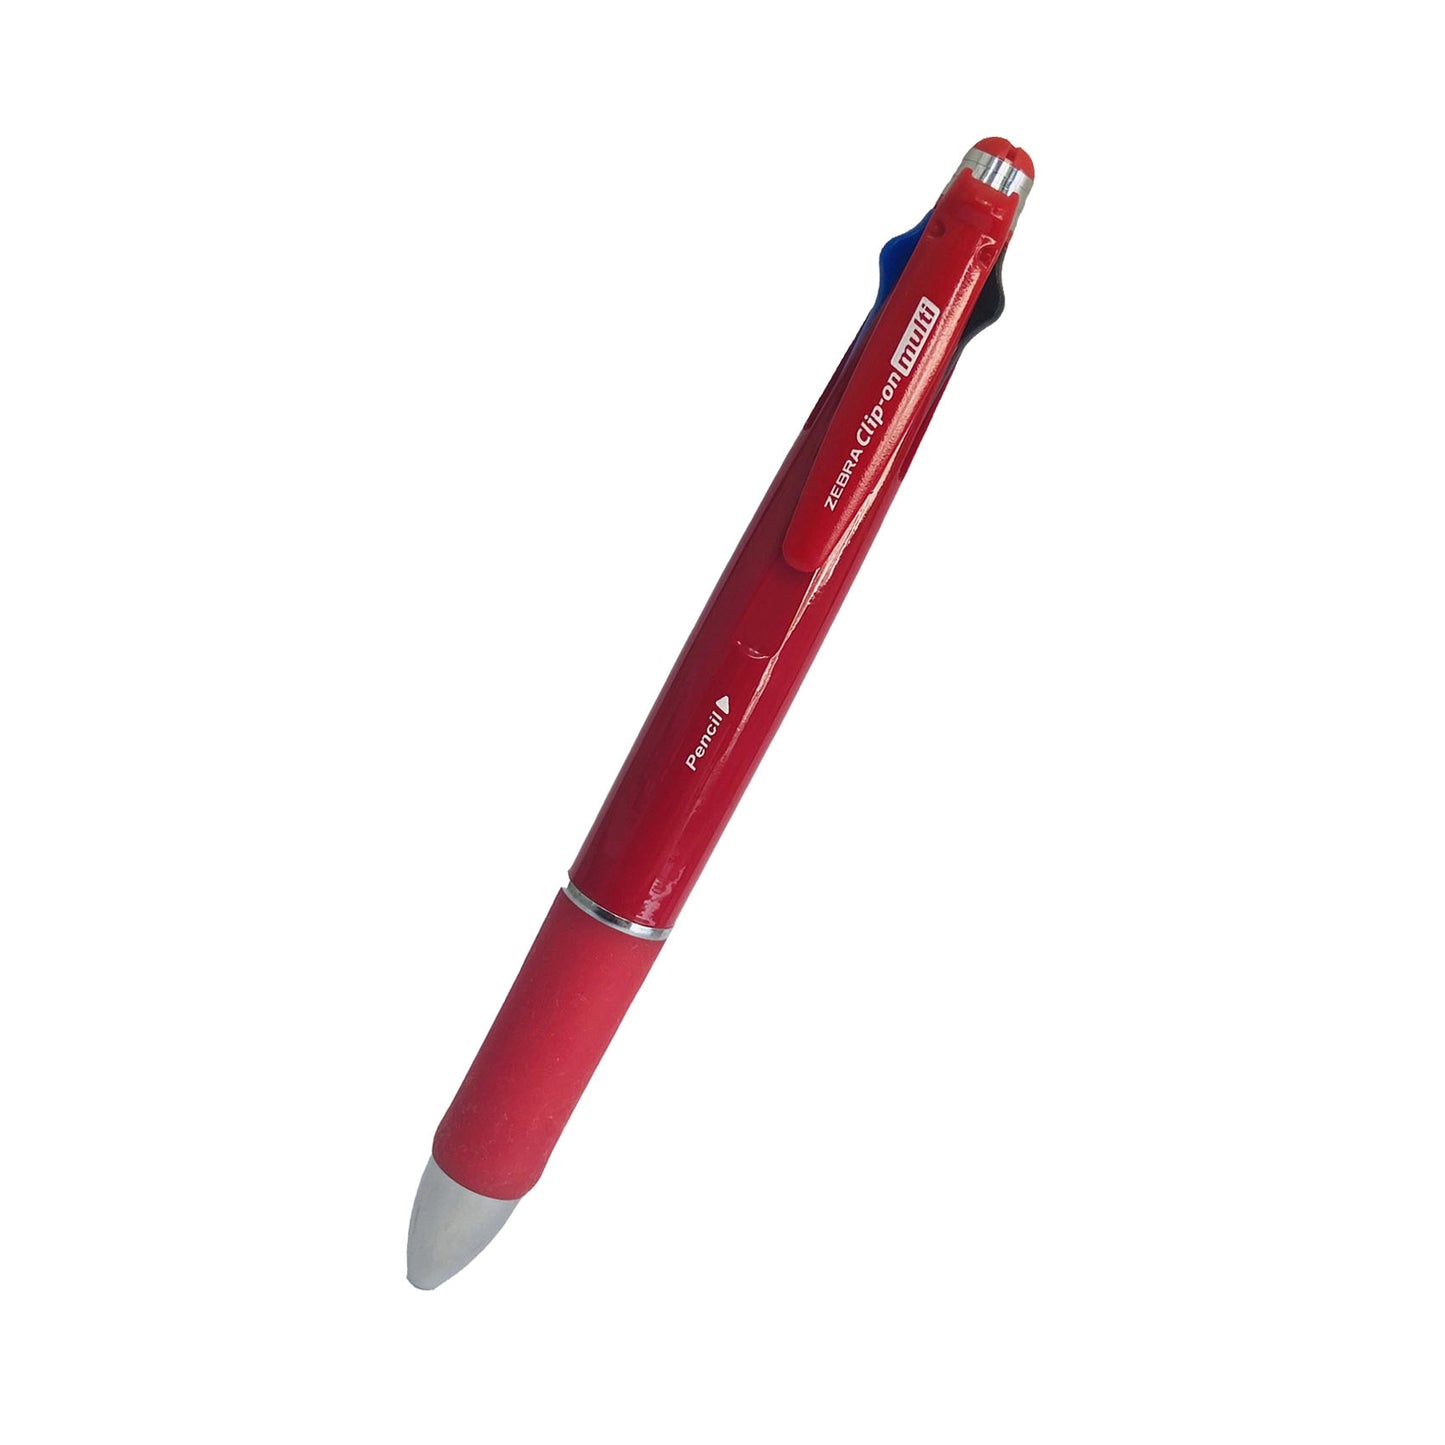 Zebra Clip on multi 4-Color pen and pencil (5 in 1) metal body